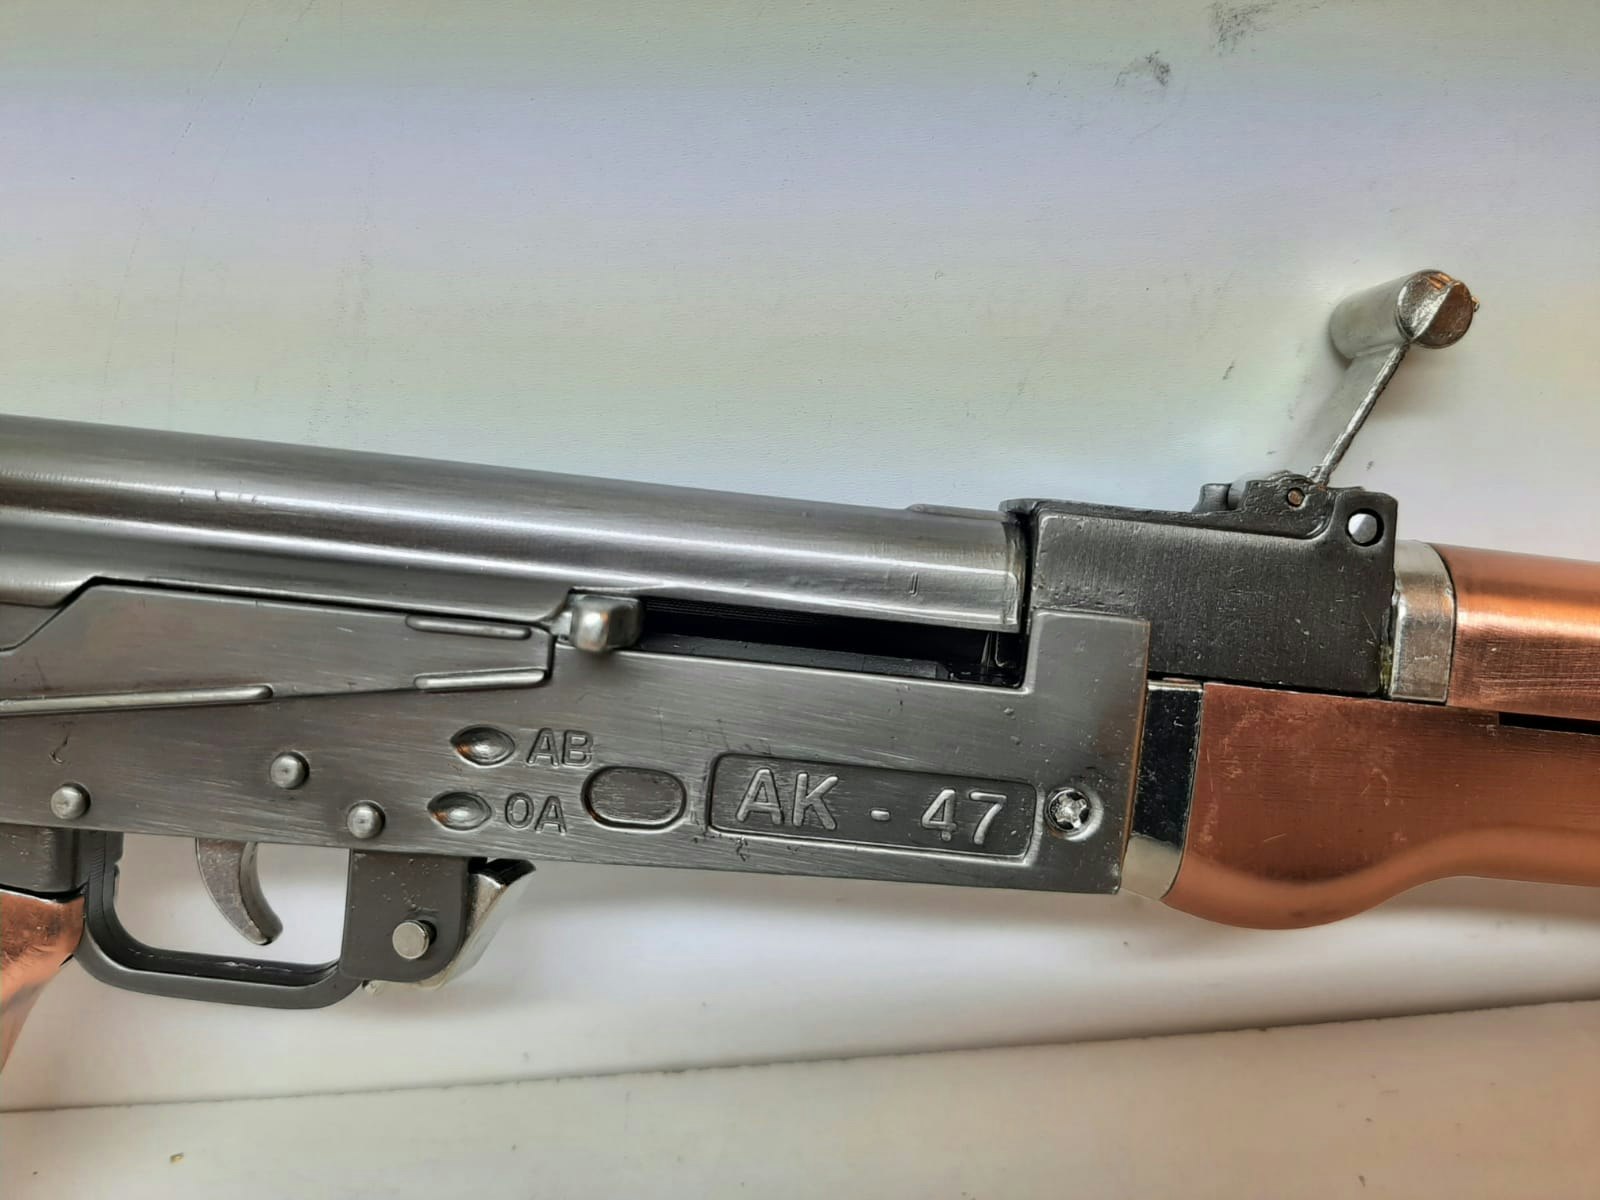 AK47 Mini-replika (storlek 1:2)